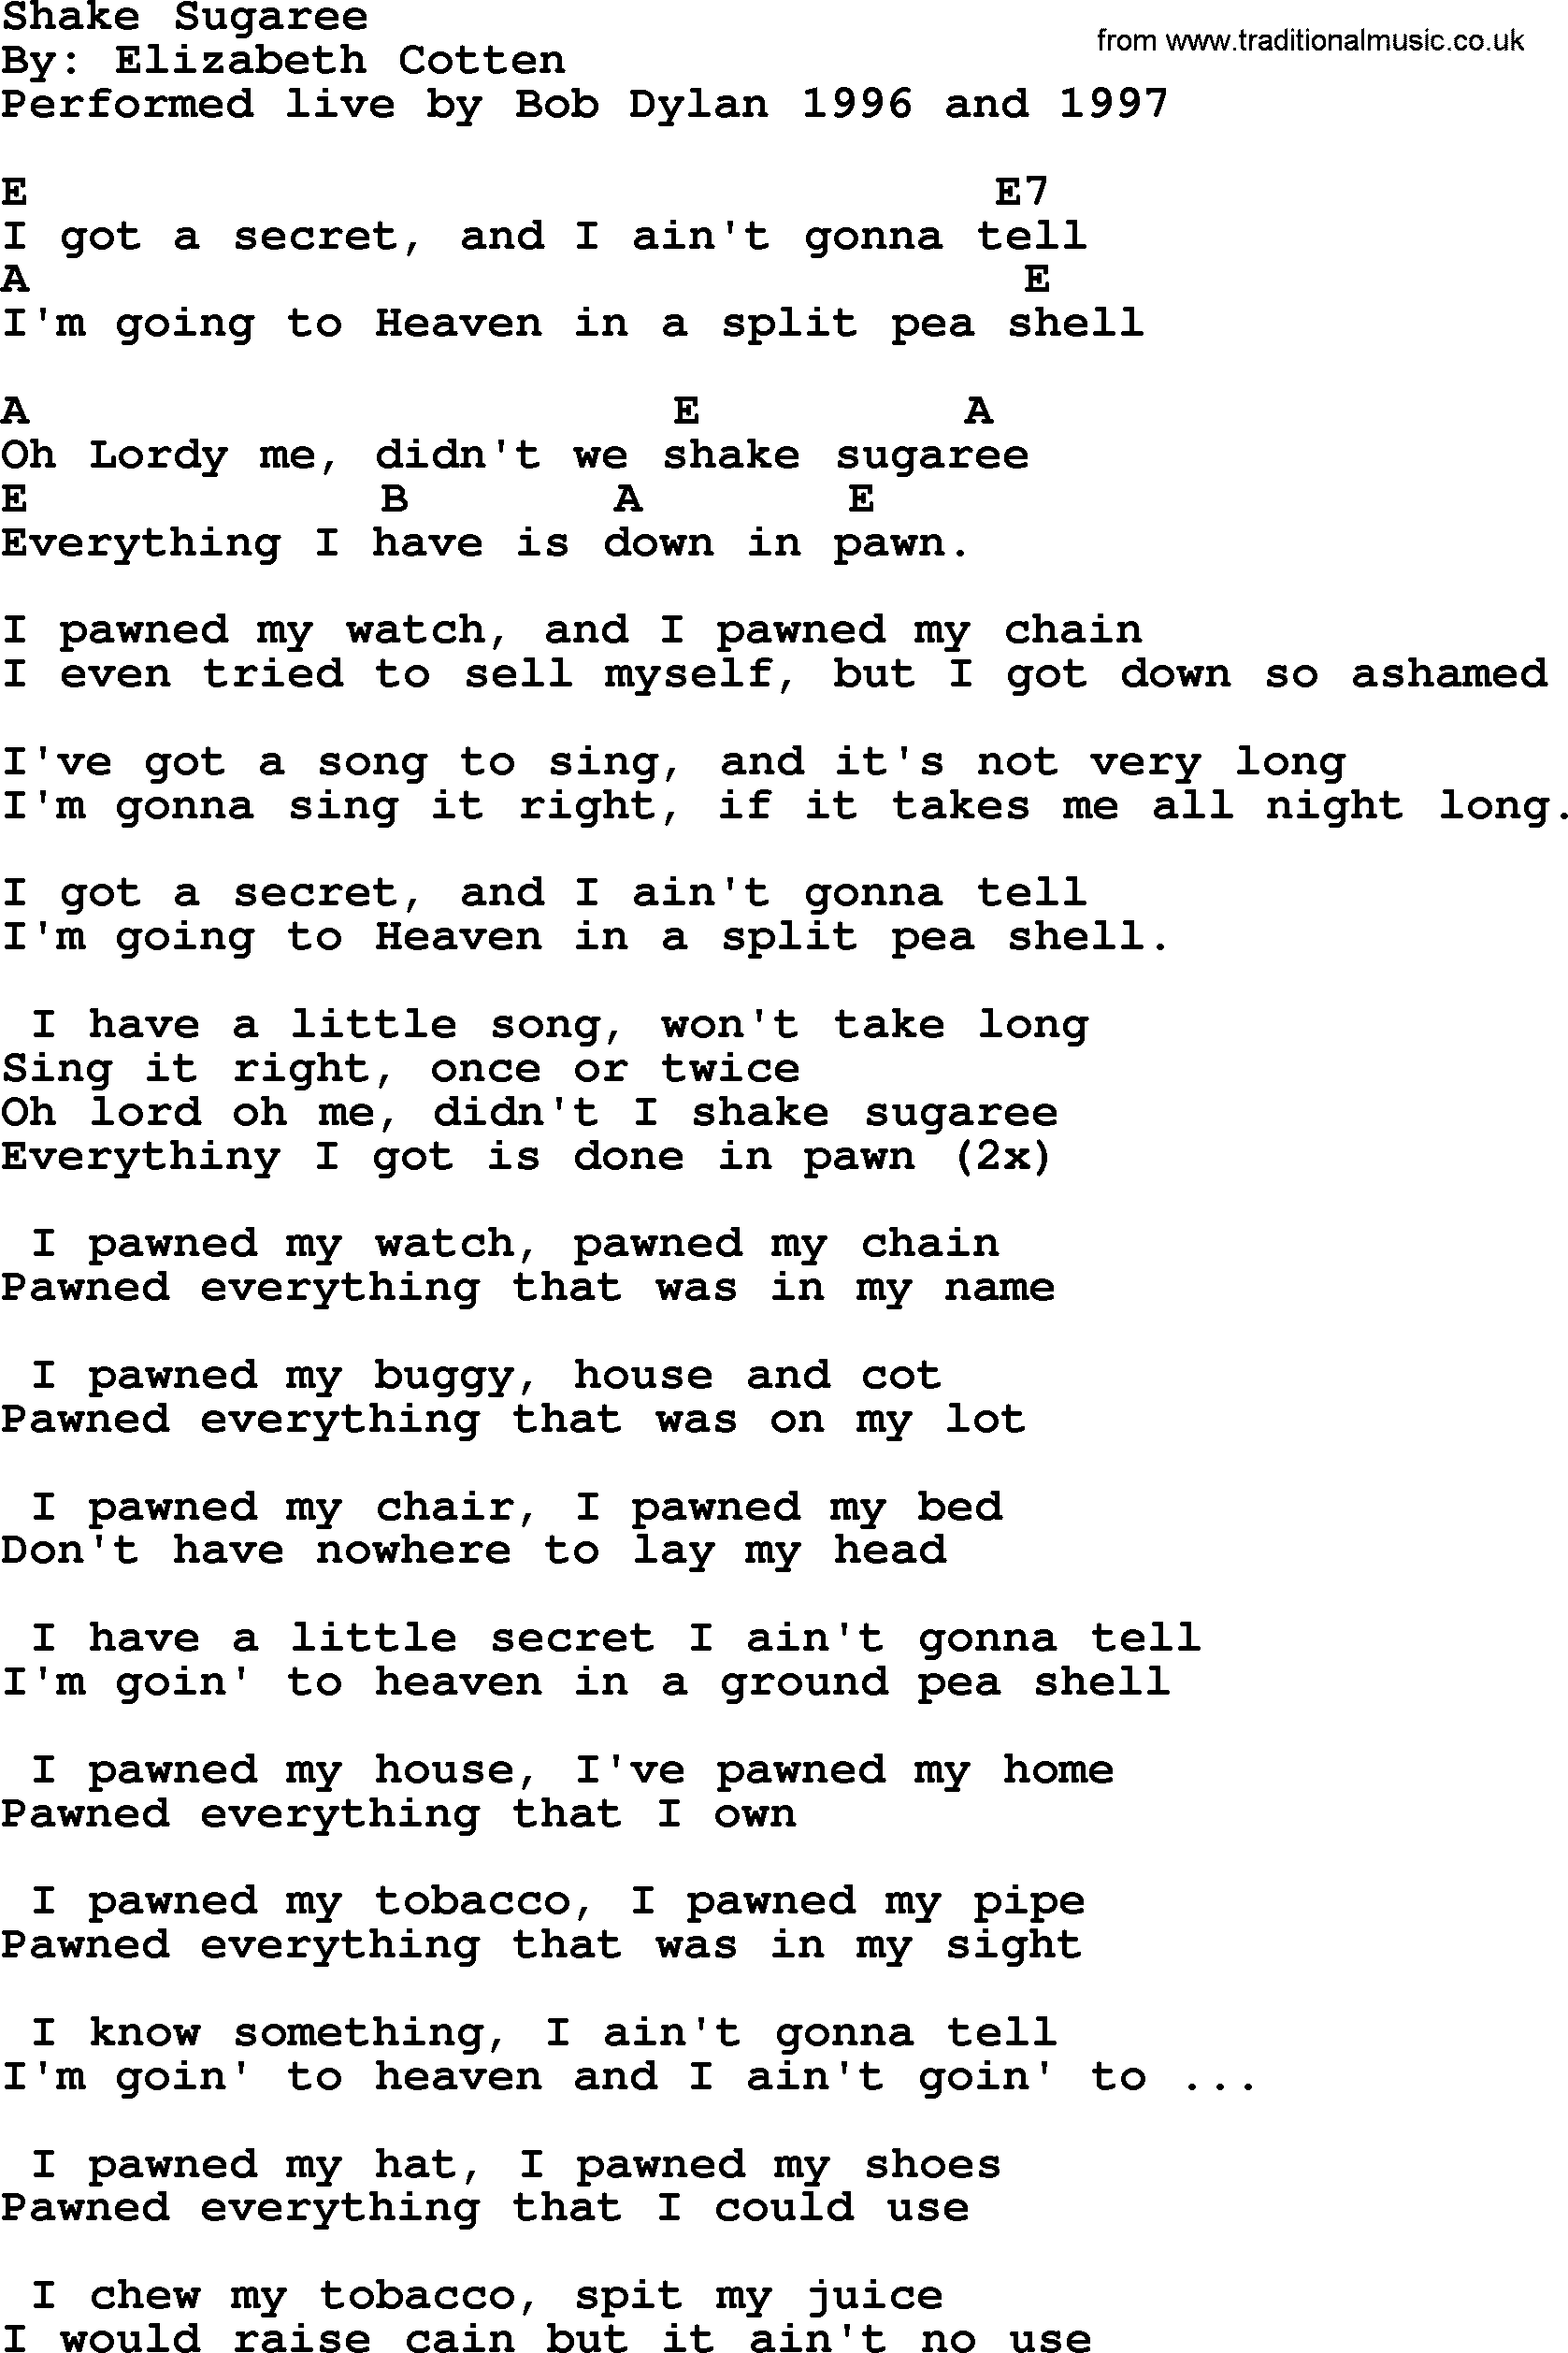 Bob Dylan song, lyrics with chords - Shake Sugaree